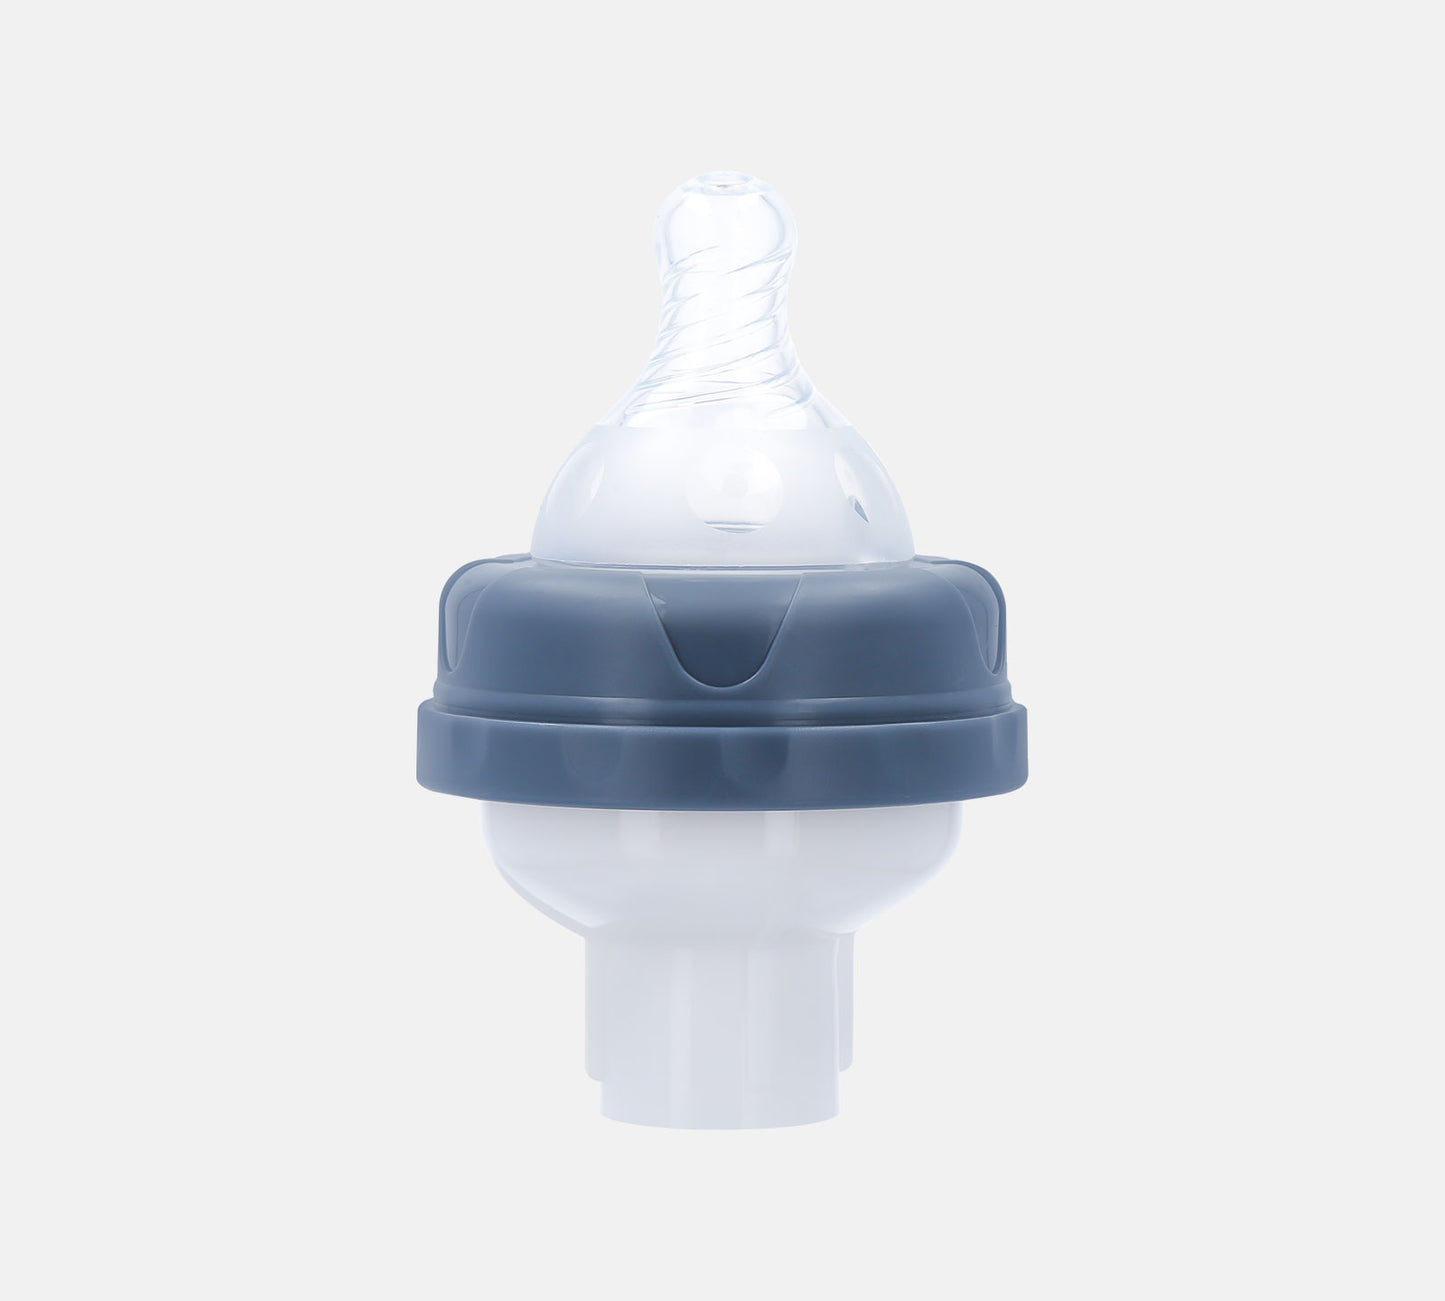 Milchbeutel-Adapter Saugaufsatz für Milchpumpe Brustpumpe(montiert)